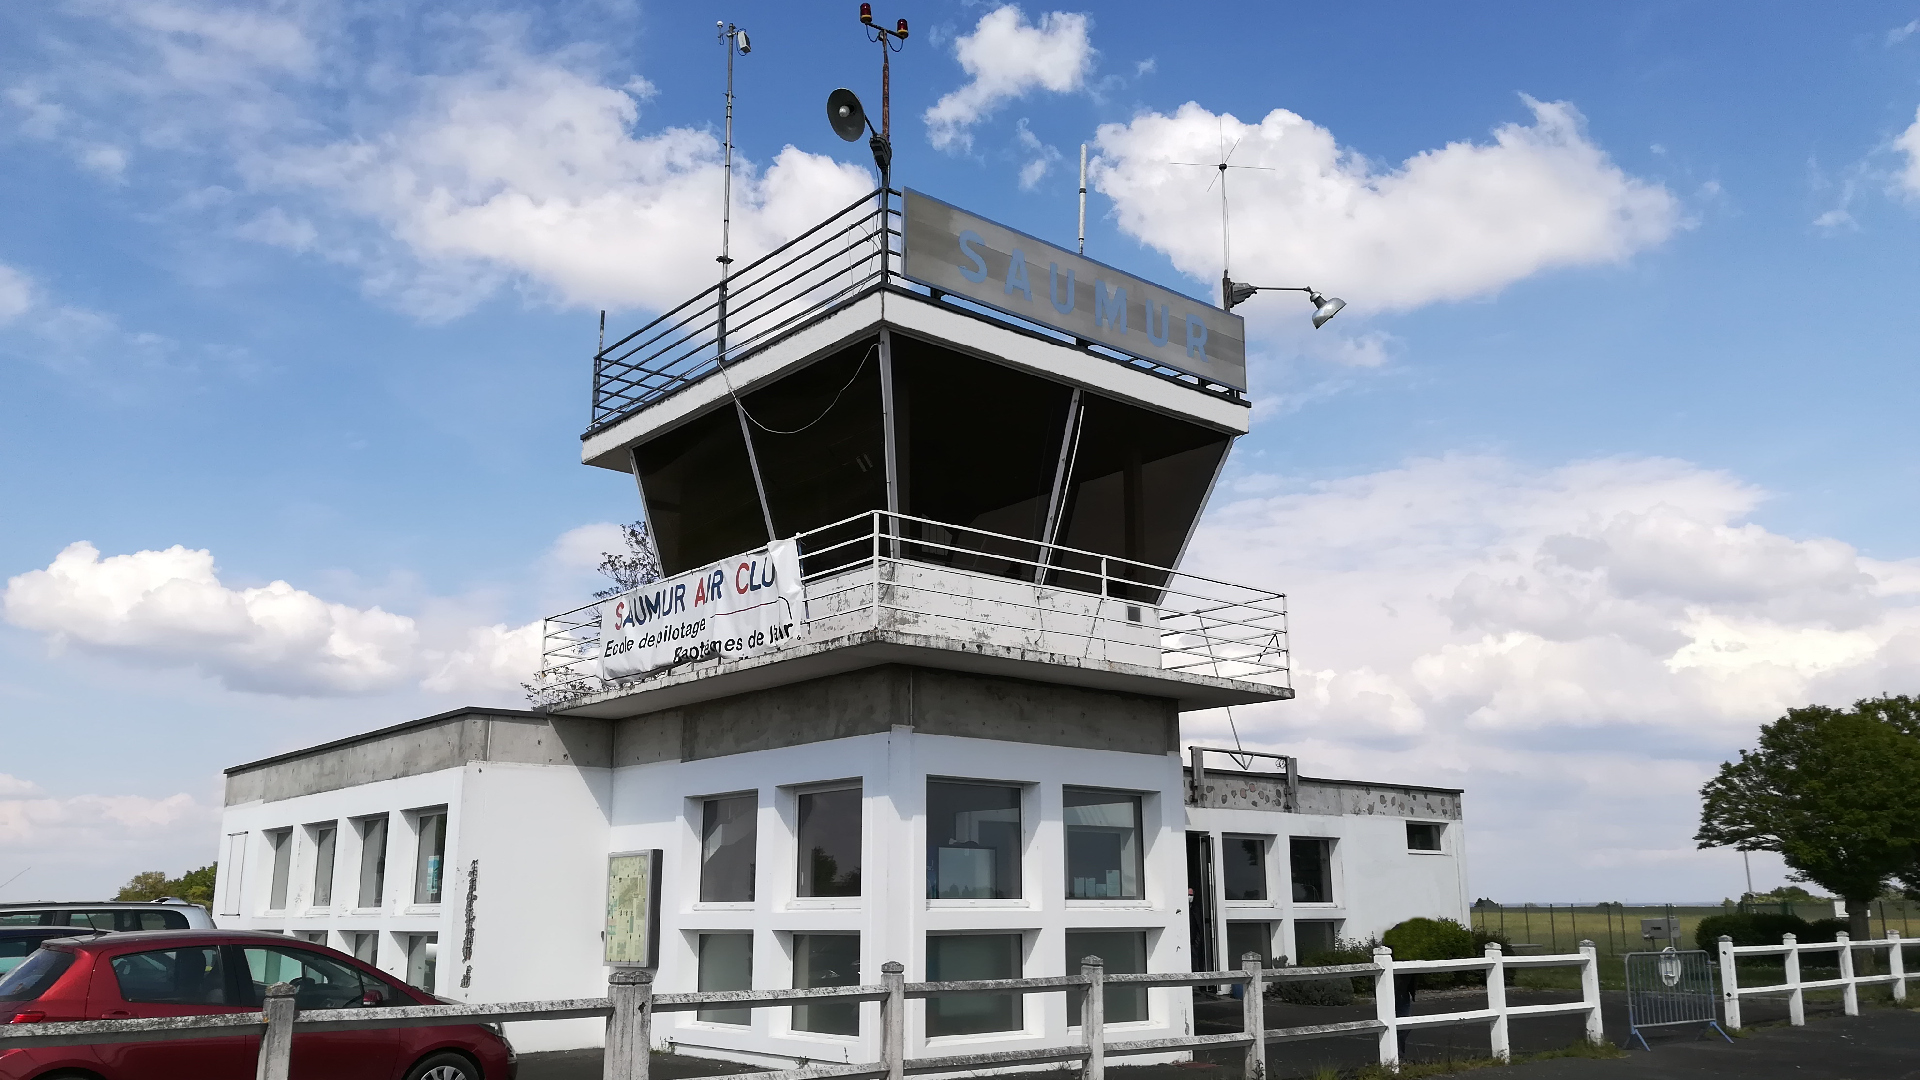 La tour de contrôle et Saumur Air Club